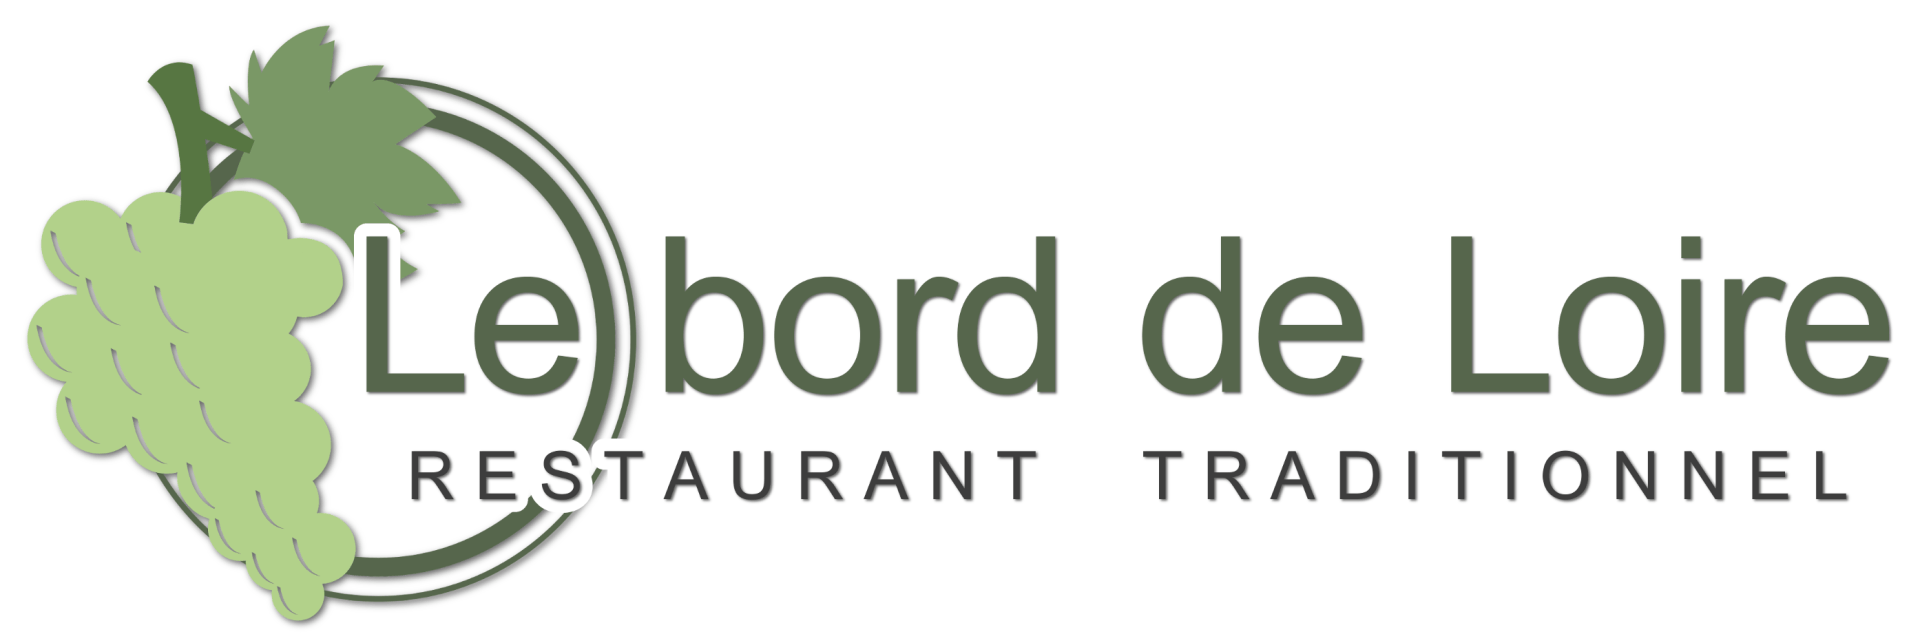 Logo Bord de Loire restaurant traditionnel cuisine française